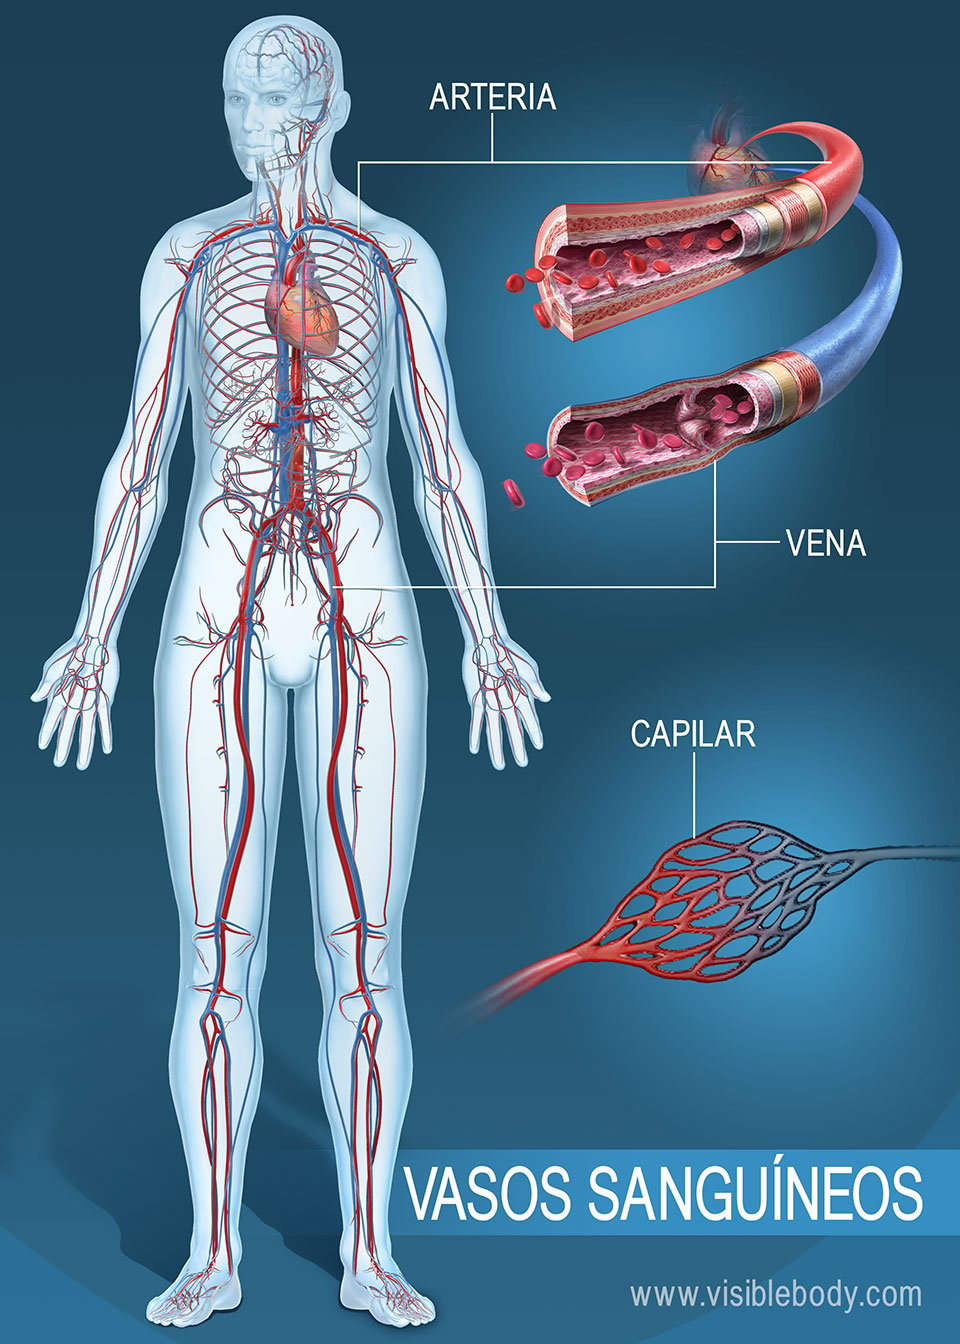 Red de arterias, venas y capilares en todo el cuerpo